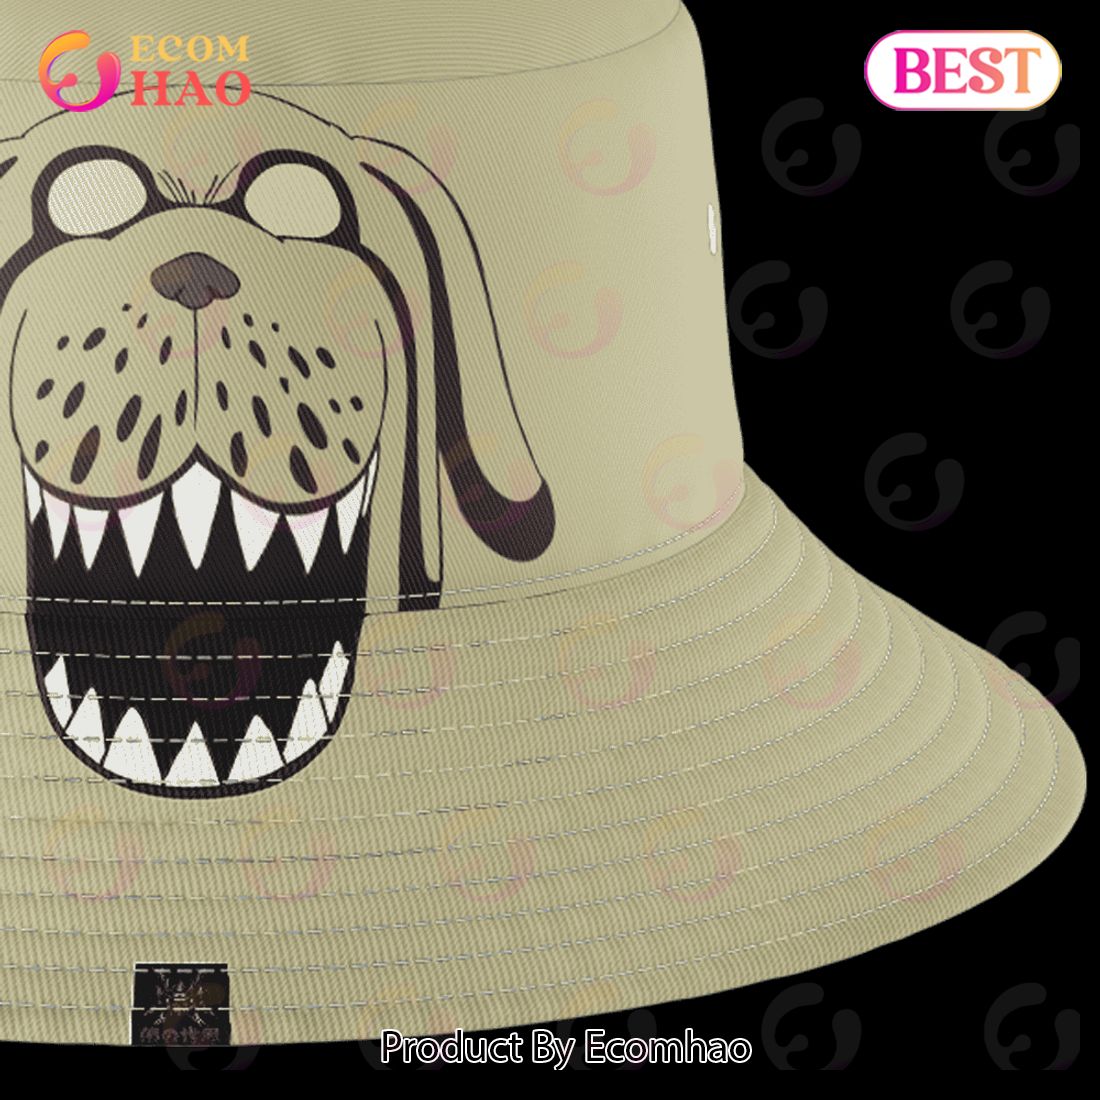 One Piece Grap Bucket Hat